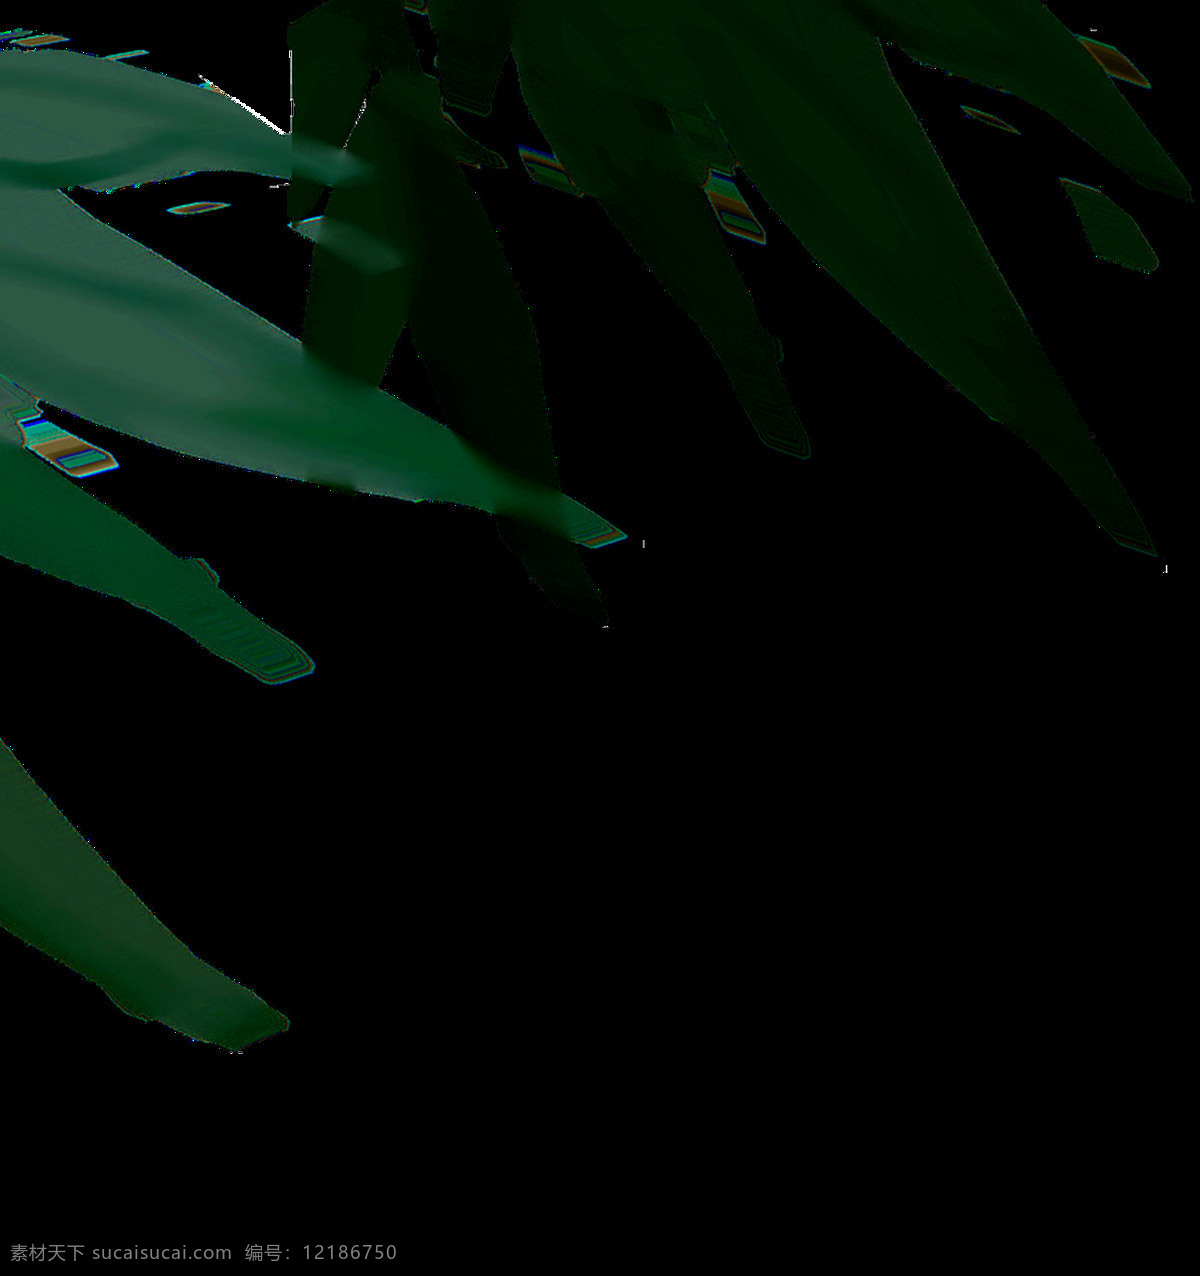 竹叶透明素材 海报设计装饰 抠图专用 绿色 设计素材 淘宝素材 透明素材 竹叶 装饰 装饰图案